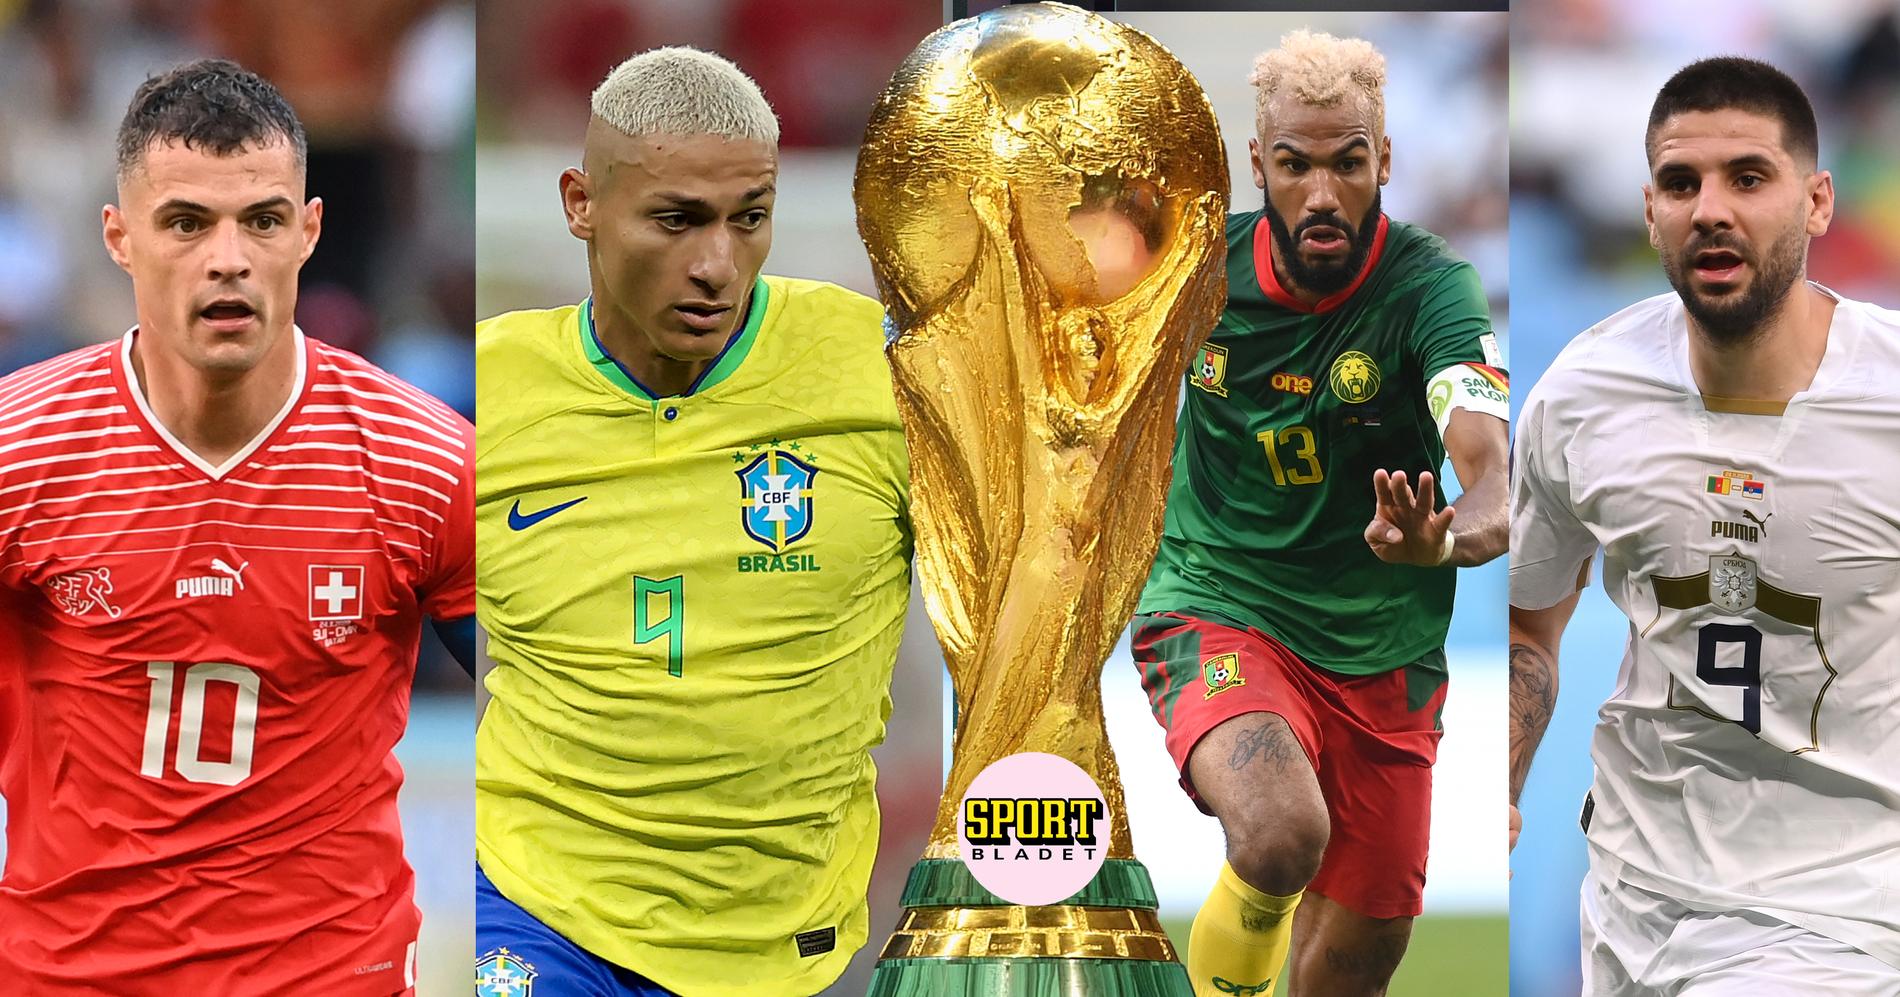 Schweiz, Kamerun och Serbien gör upp om att göra Brasilien sällskap till åttondelsfinal från grupp G i fotbolls-VM 2022.